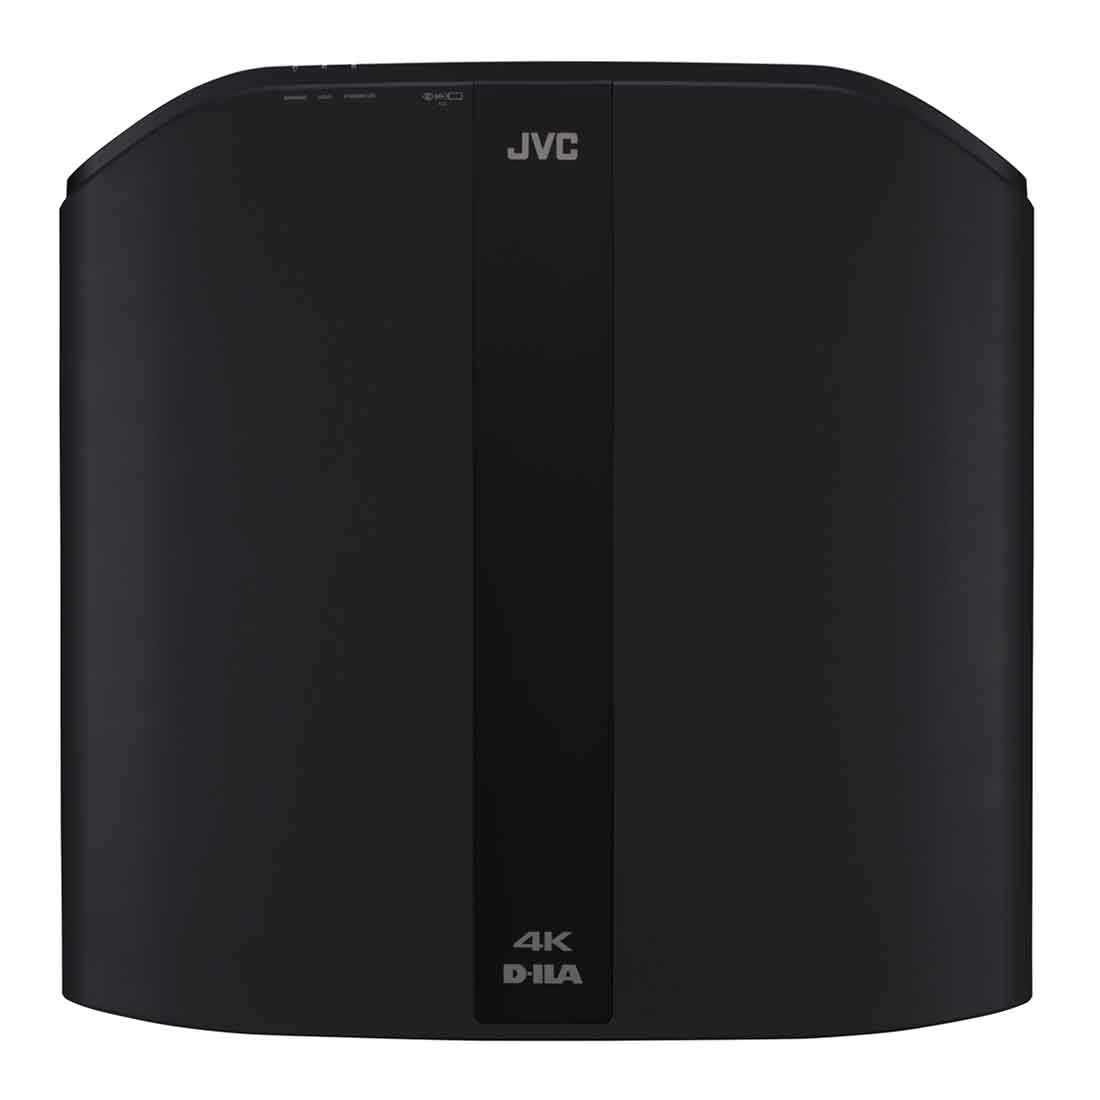 JVC DLA-NP5B 4K 120p Home Theatre D-ILA Projector – Black